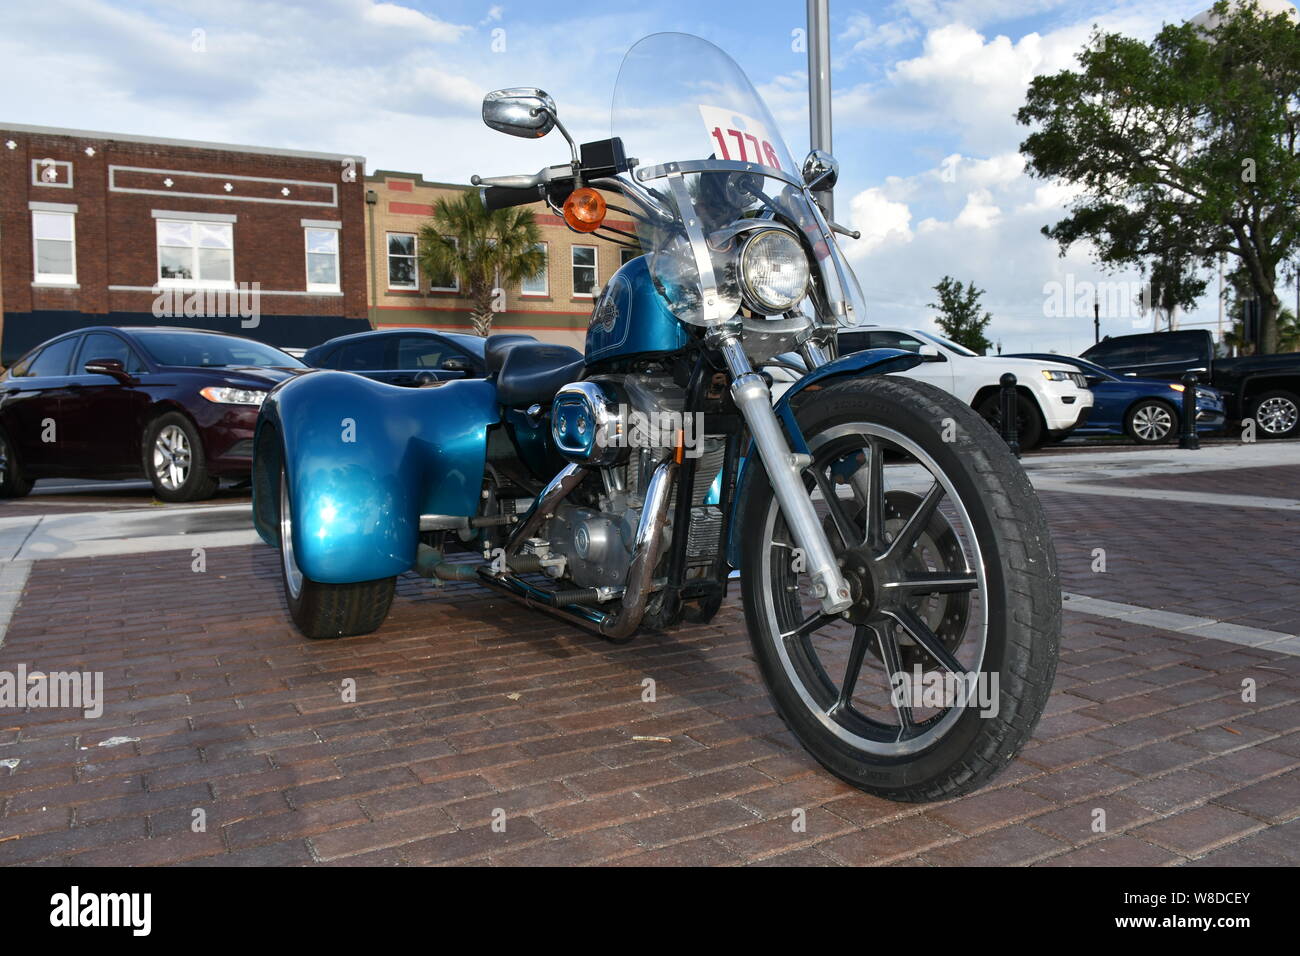 Diese Bilder eines Harley Davidson Trike wurden an den Cruisin' Winter Haven, Florida monatliche Auto Show im Mai 2019 übernommen. Stockfoto